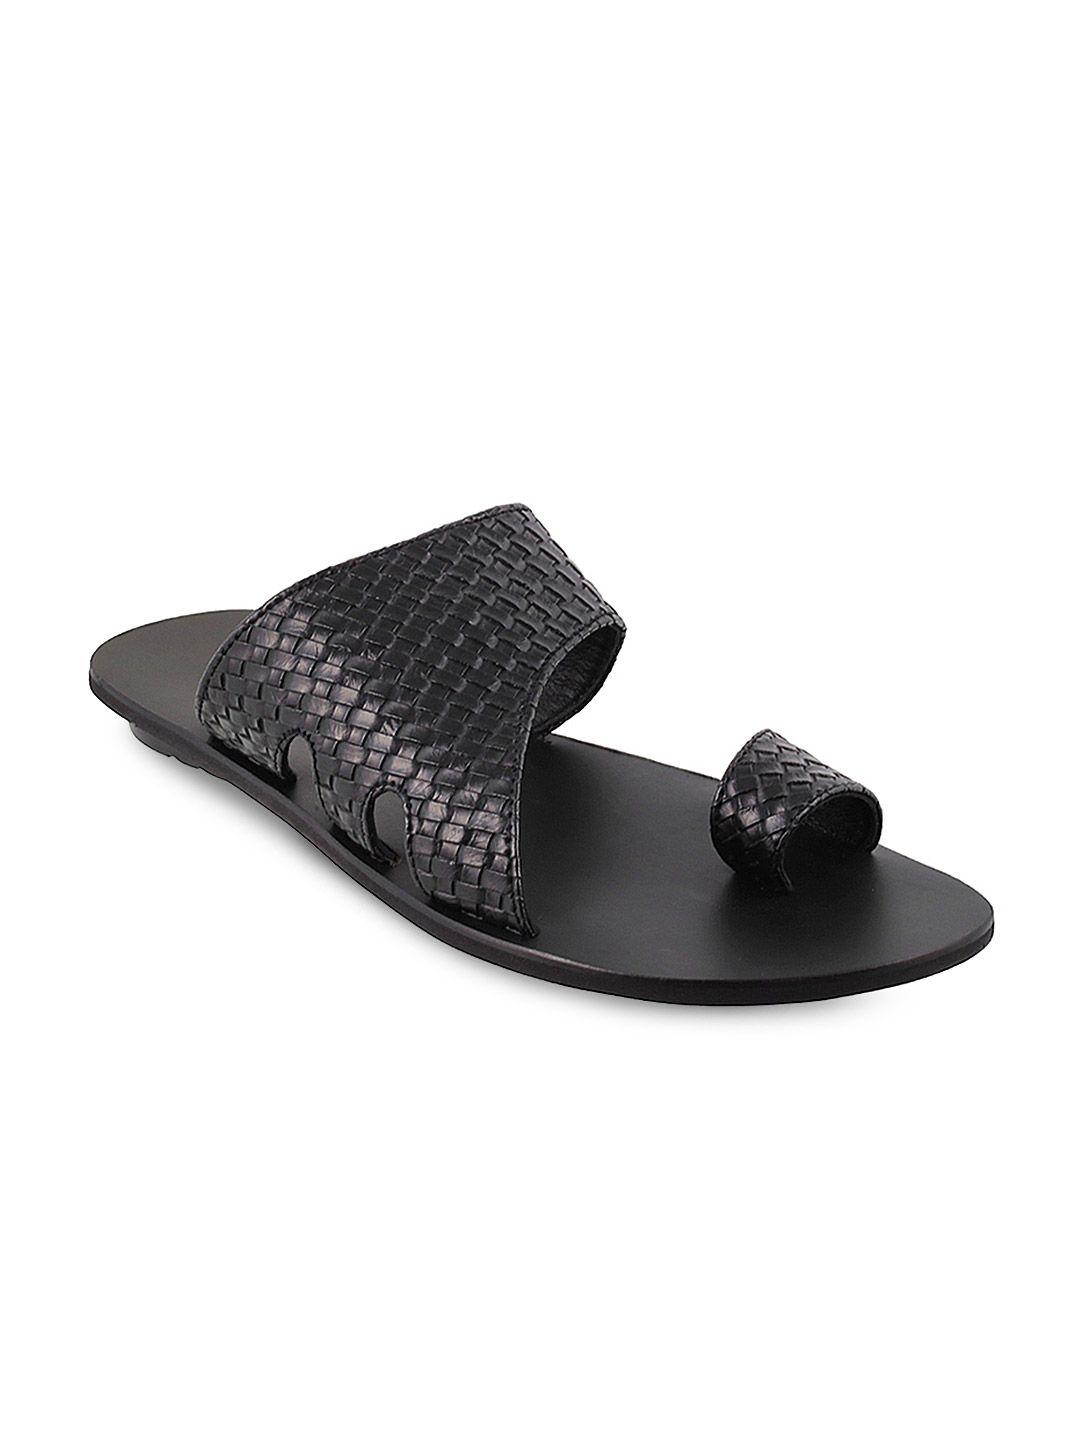 metro men black comfort sandals